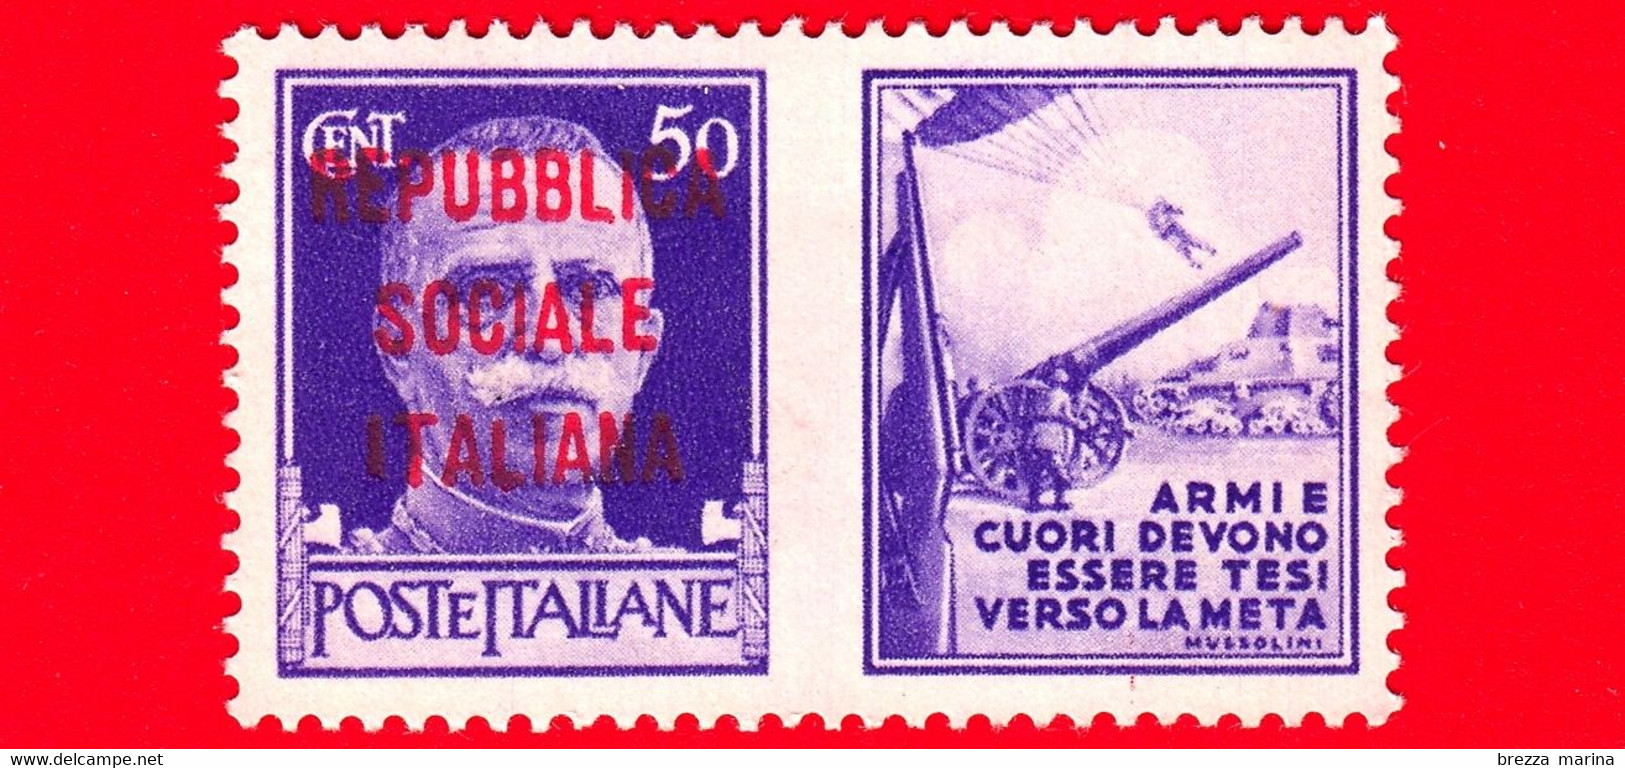 Nuovo - MNH - ITALIA - Rep. Sociale - 1944 - Imperiale - Propaganda Di Guerra - Armi E Cuori Devono Essere Tesi Ver - 50 - Oorlogspropaganda